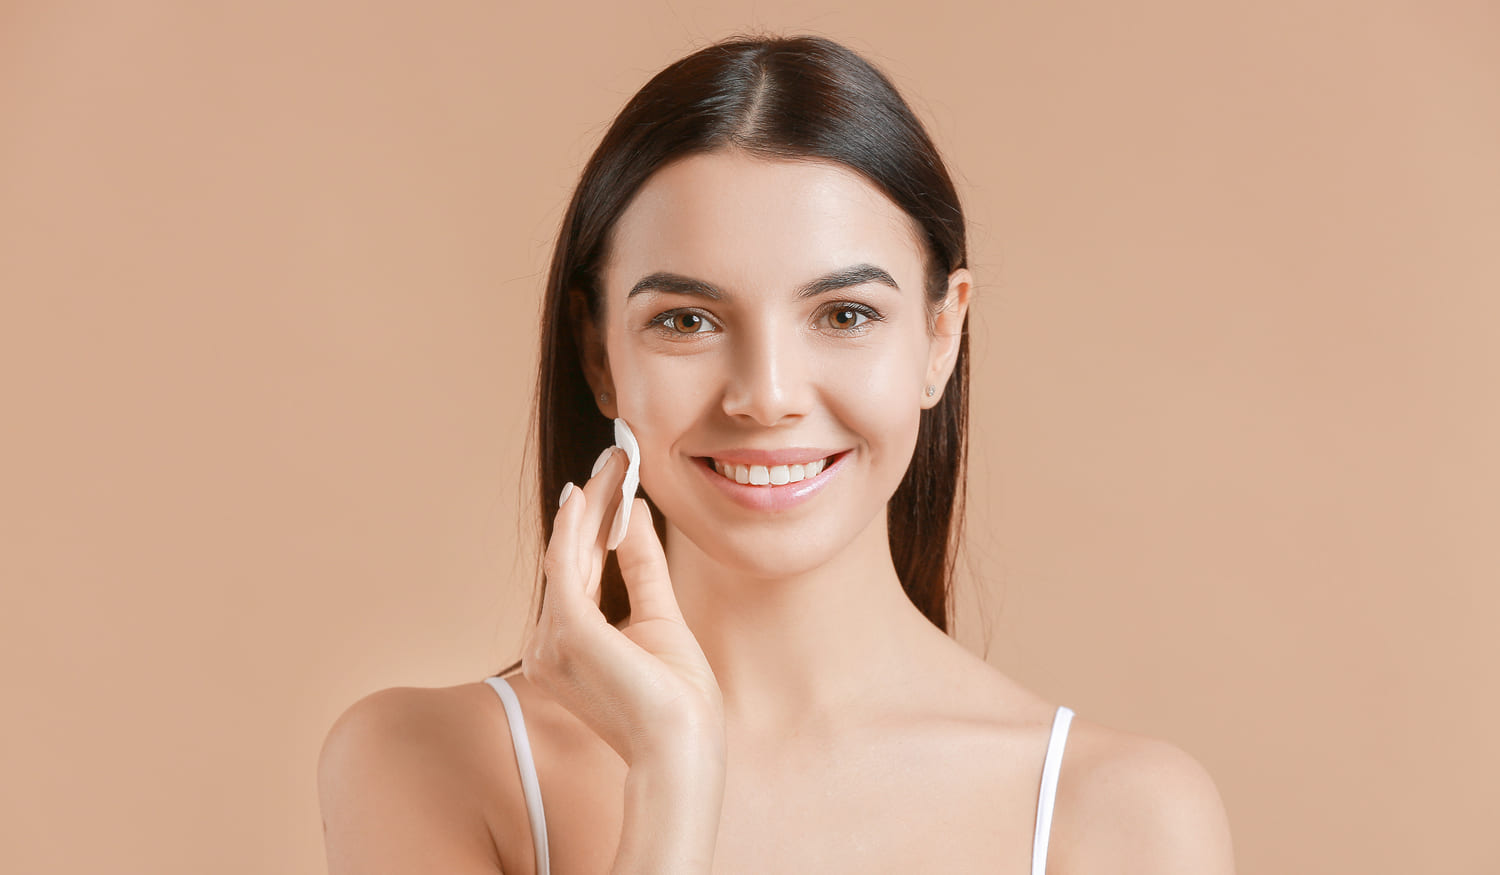 Poren verfeinern: Was hilft wirklich, große Poren zu verkleinern?